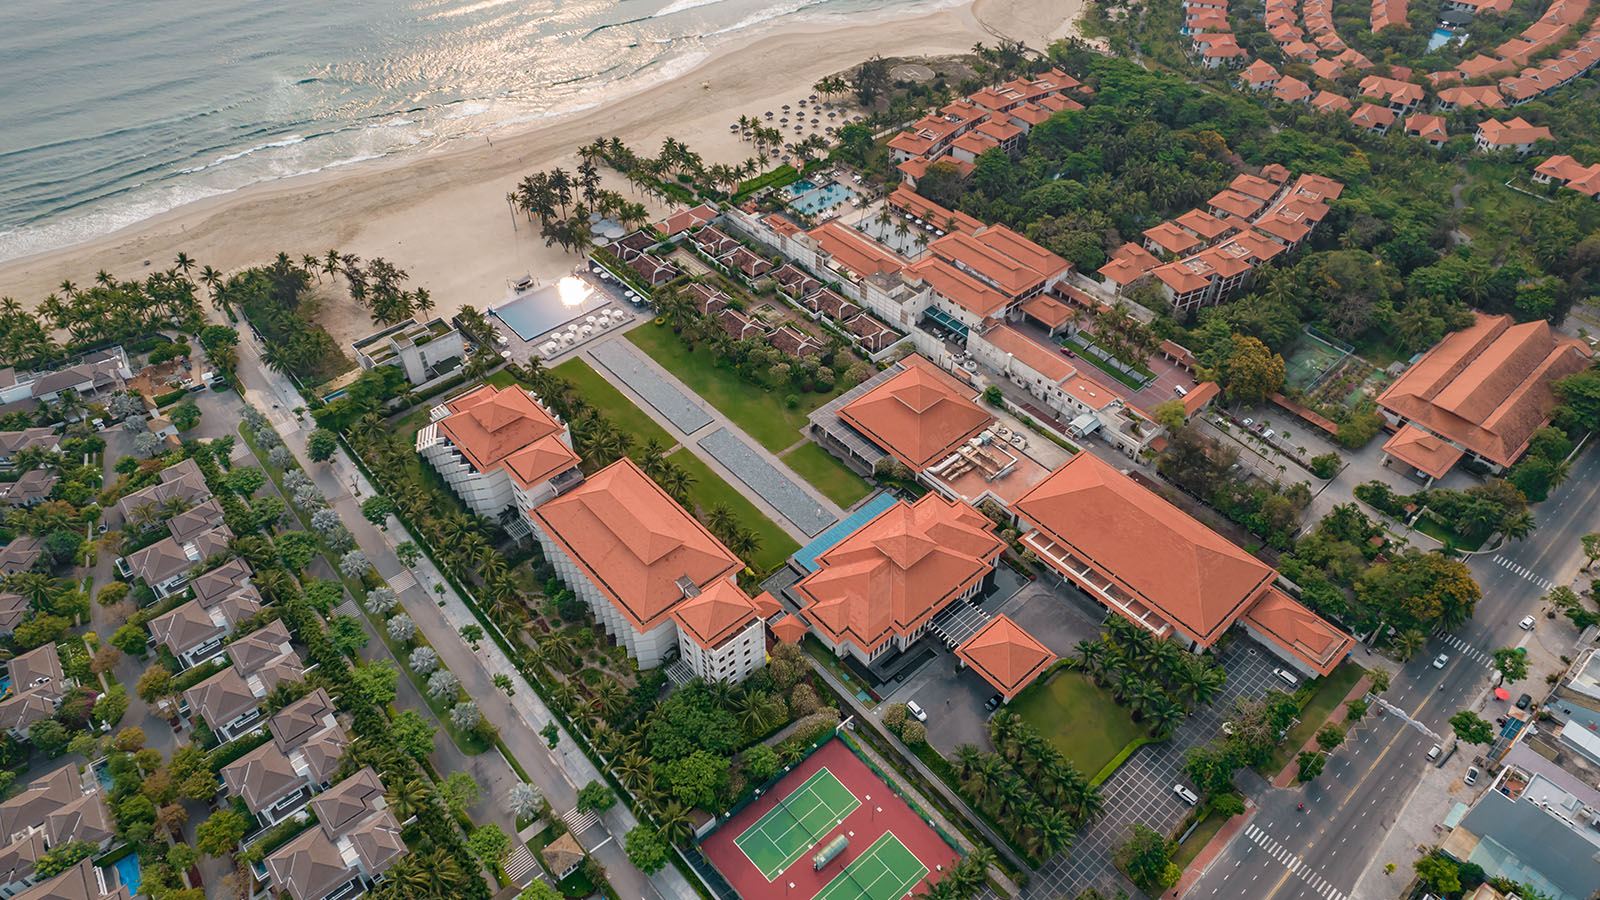 Resort Đà Nẵng có bãi biển riêng